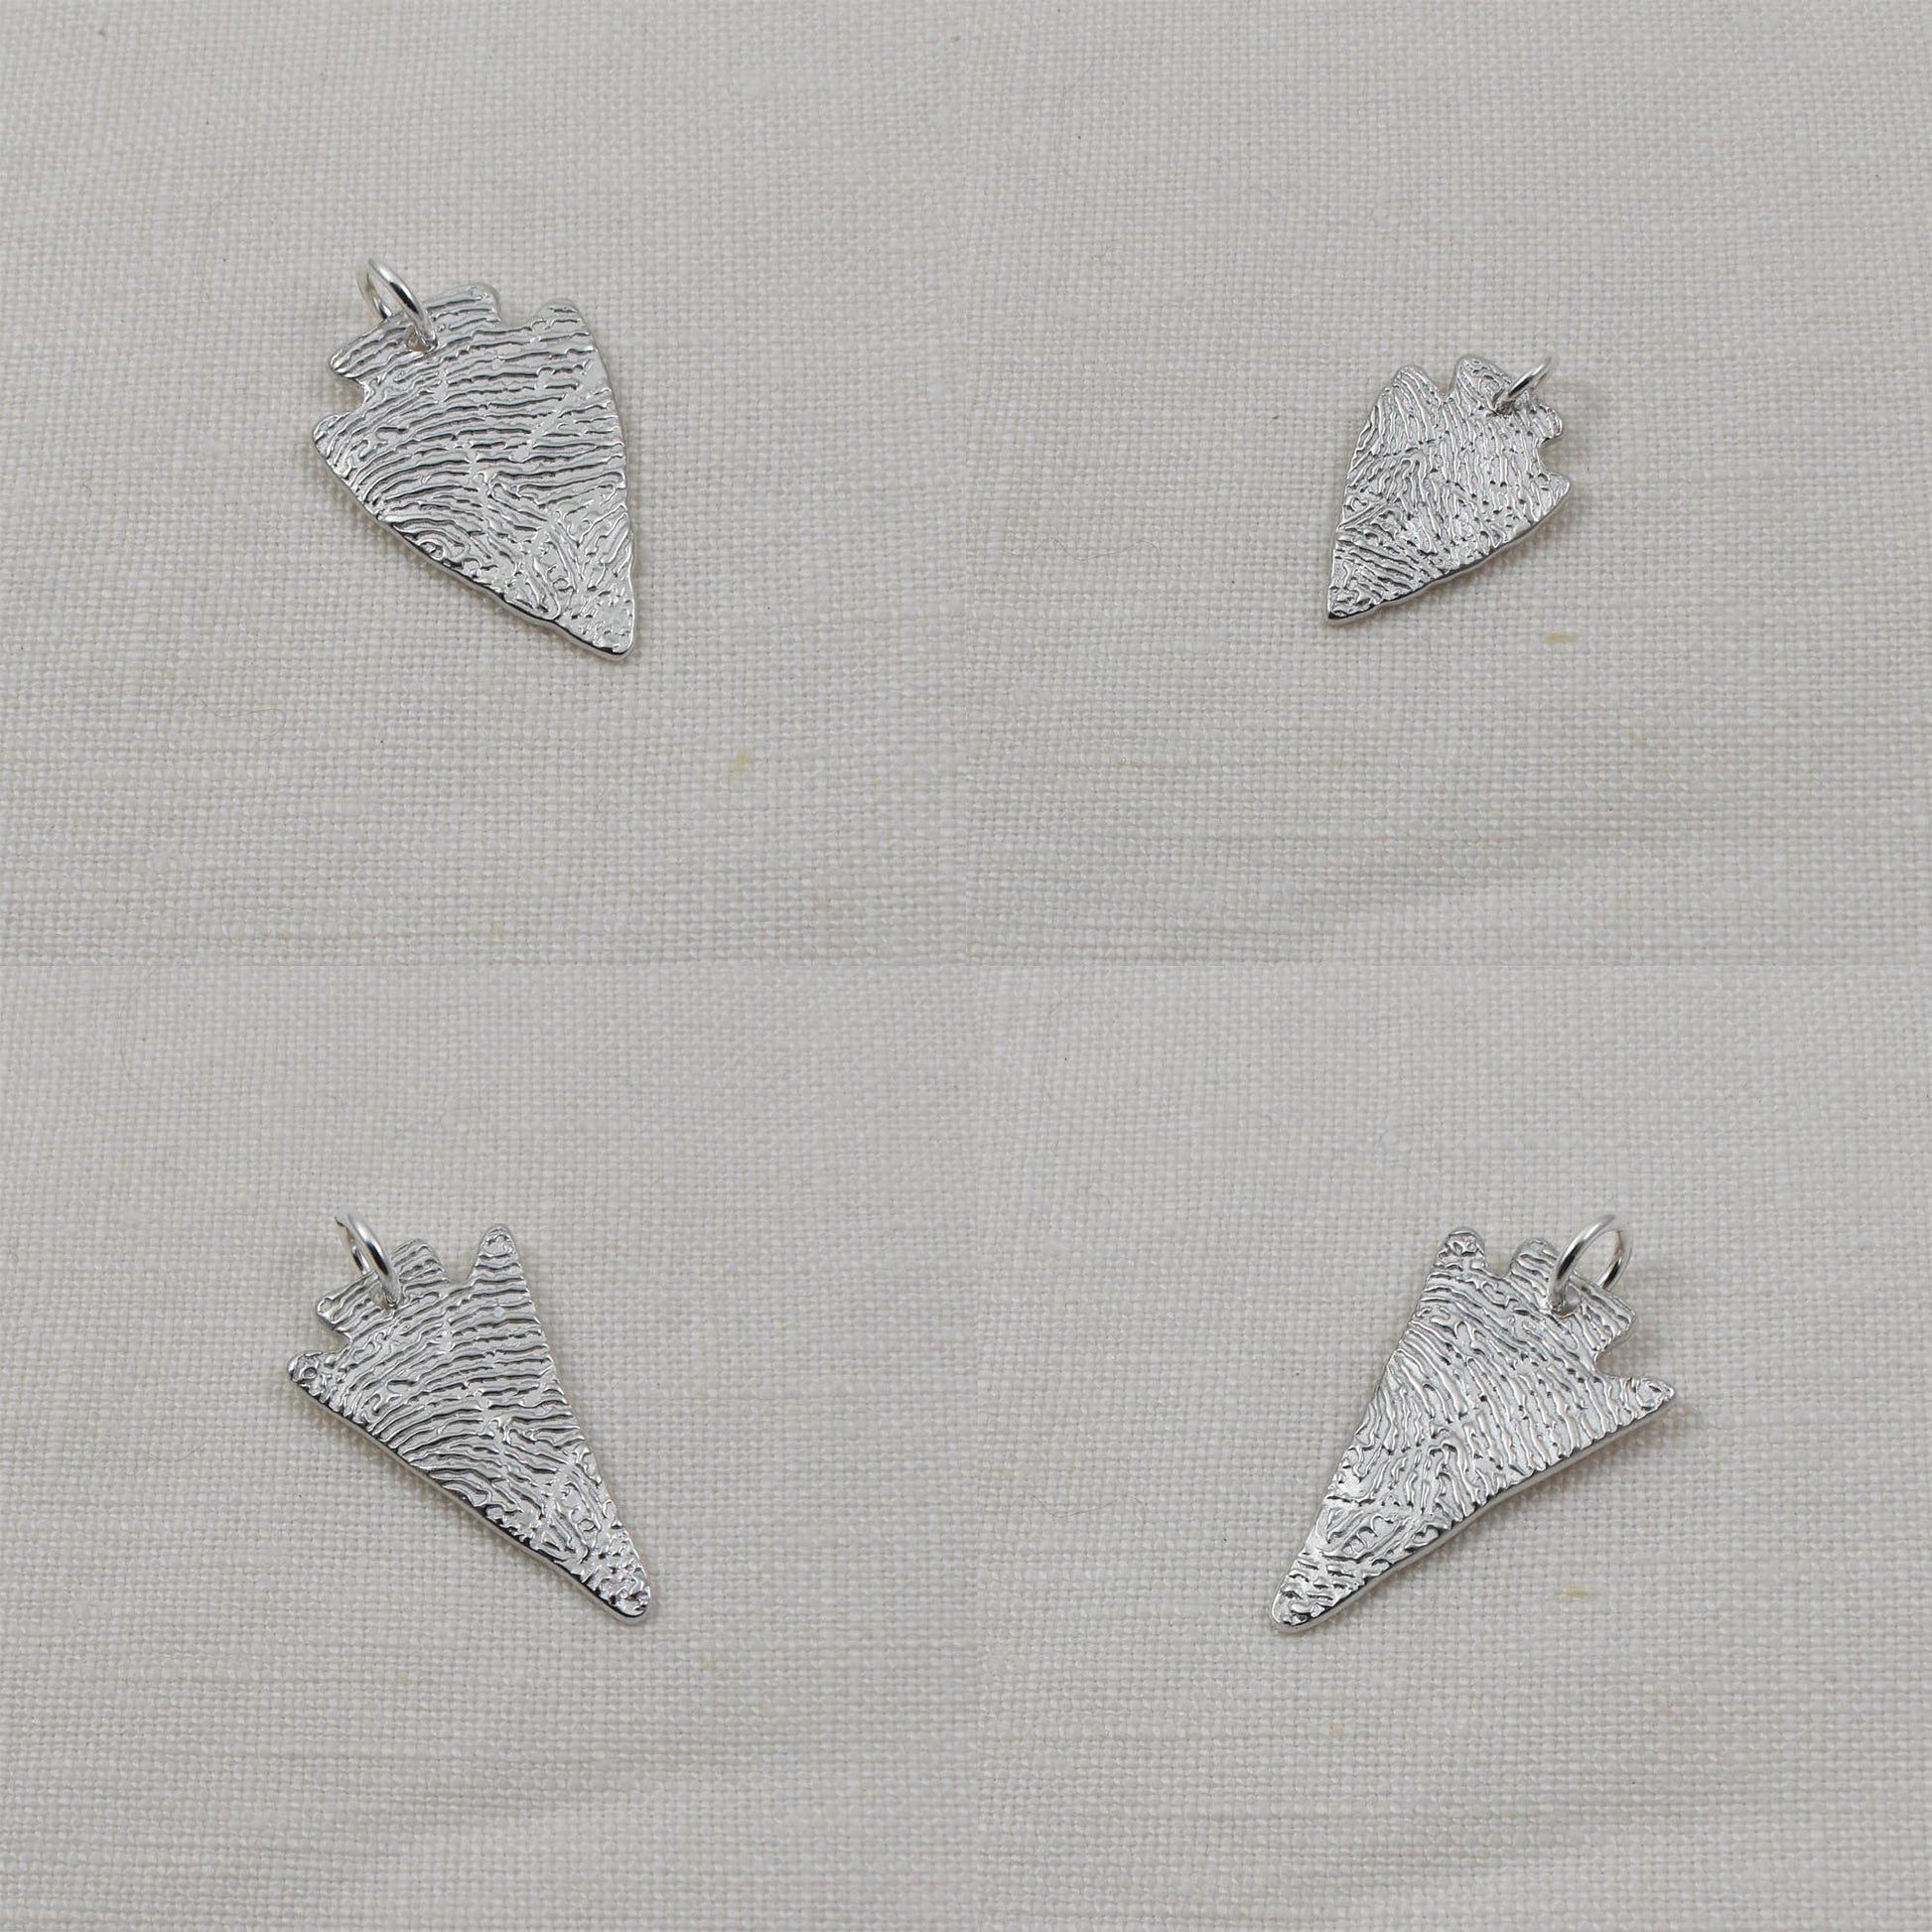 4 Arrowhead Fingerprint Pendants